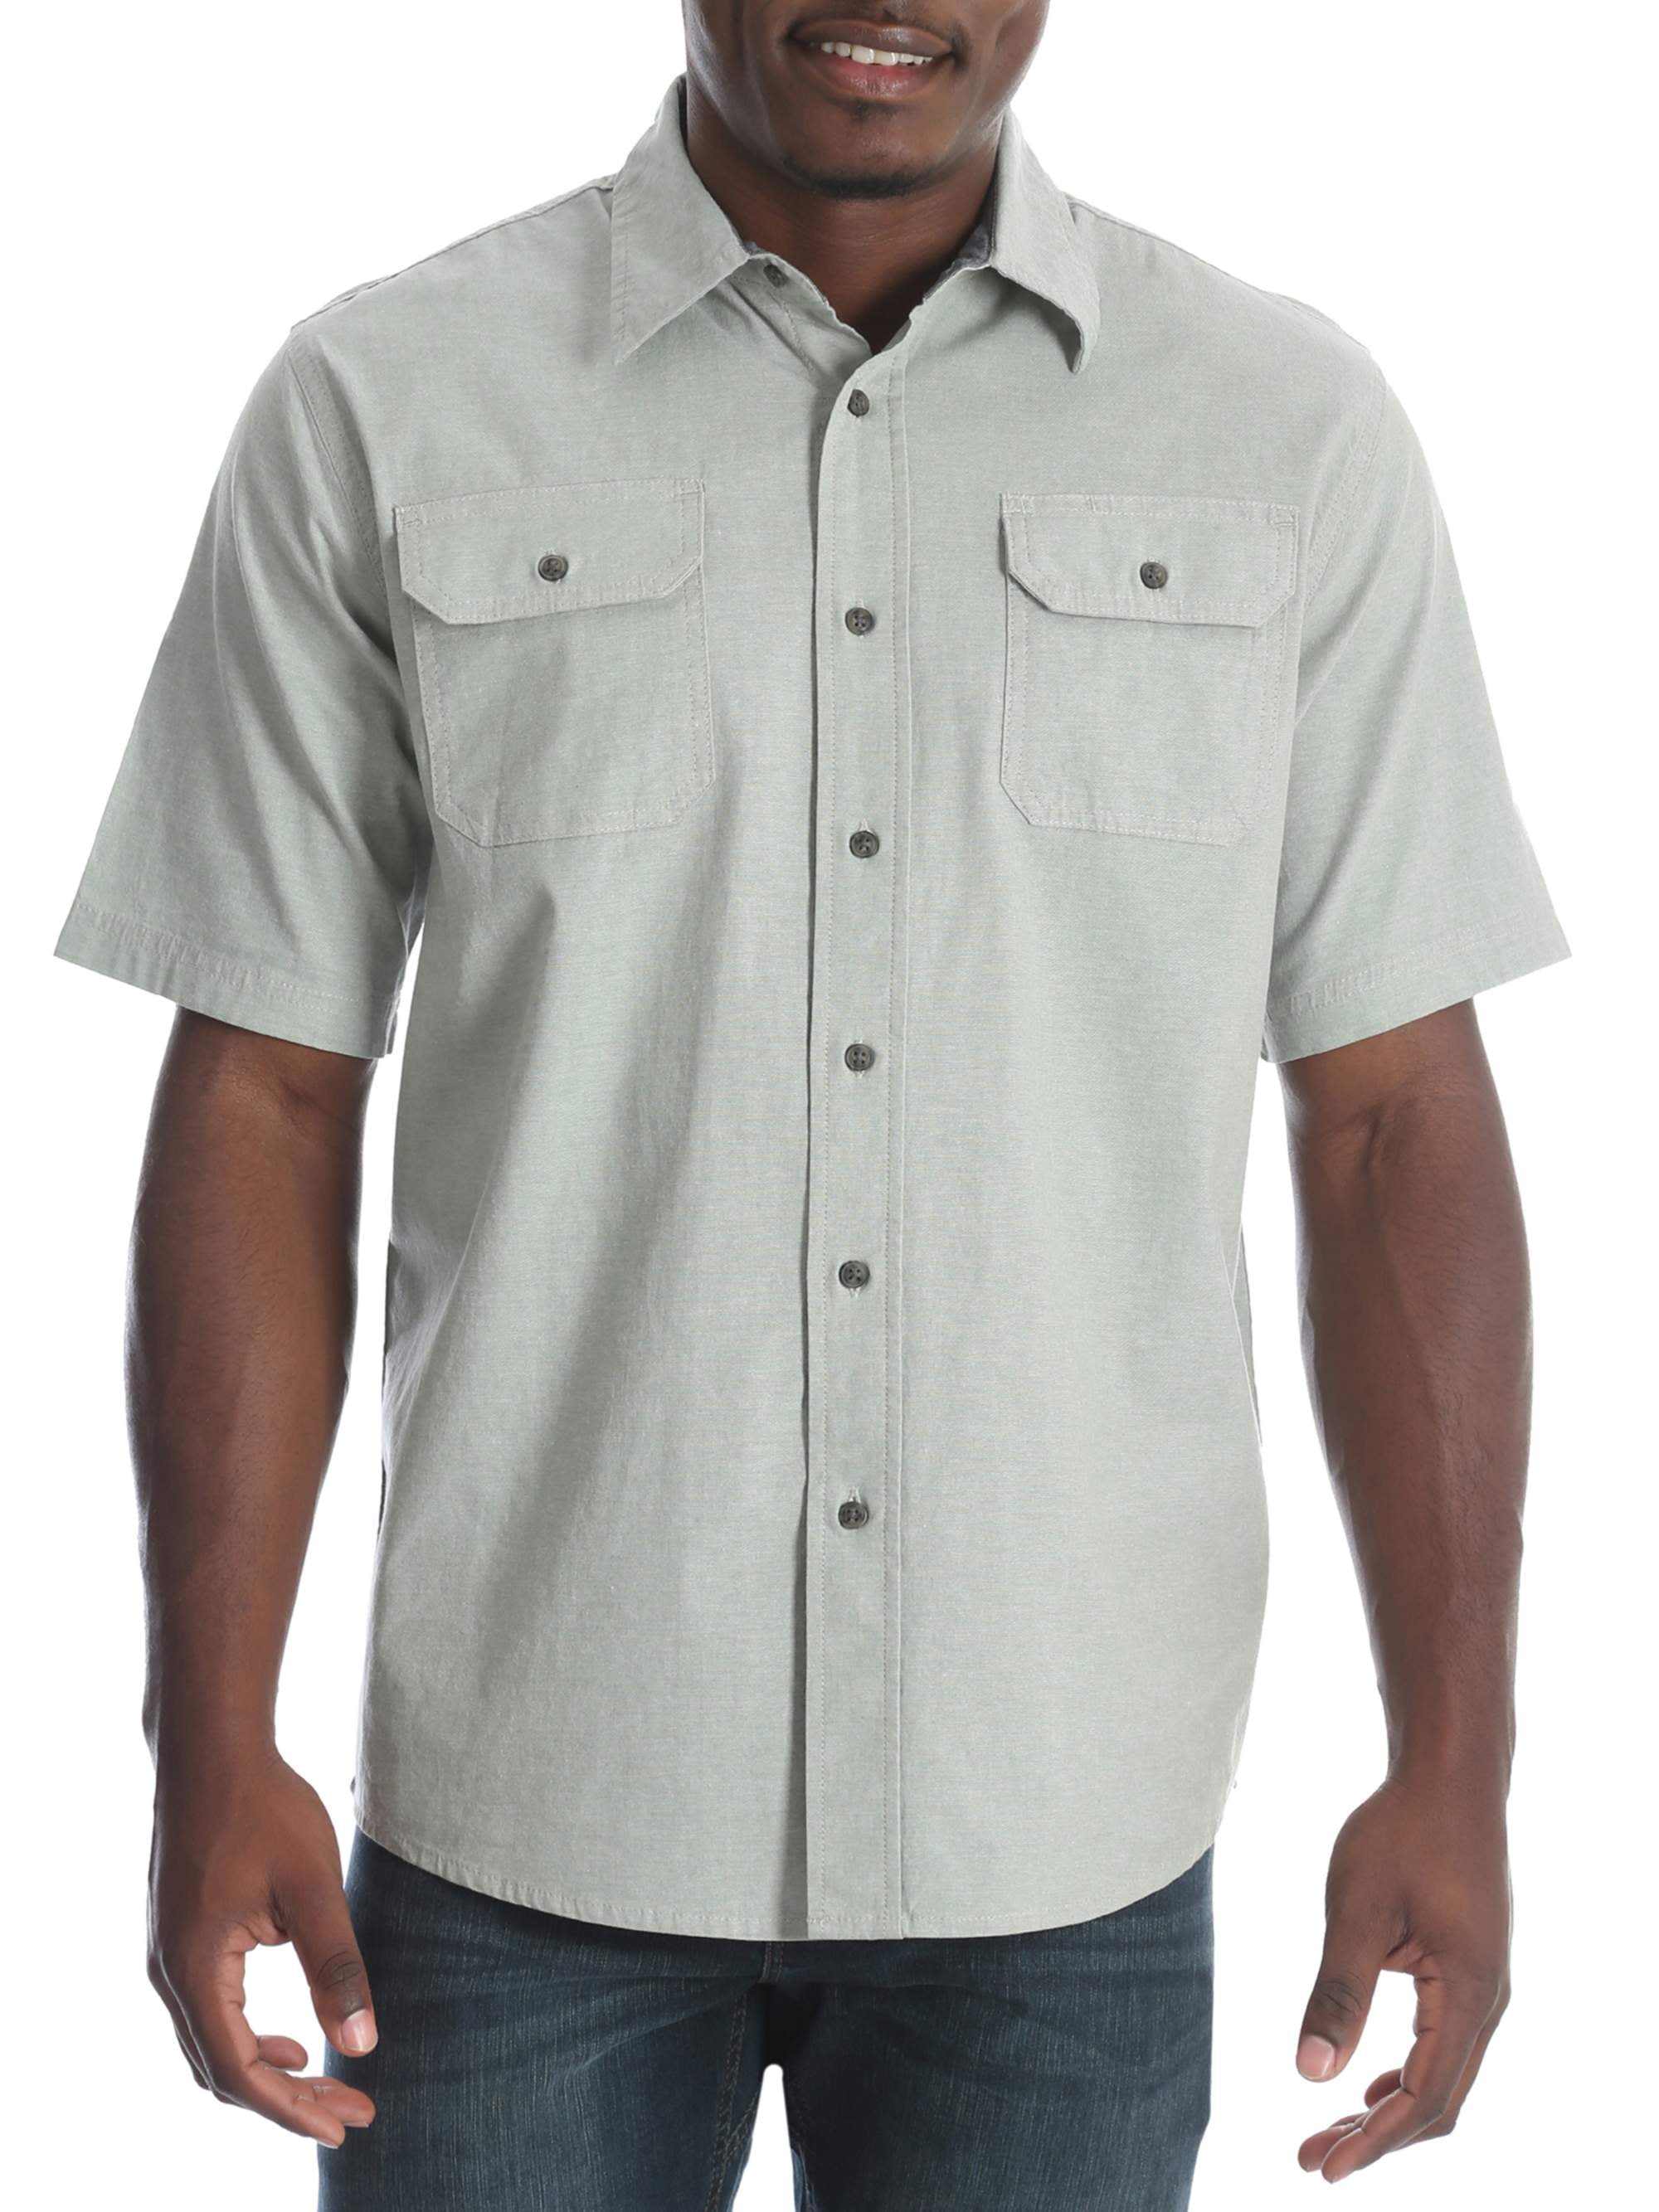 Big Men's Short Sleeve Woven Shirt - Walmart.com